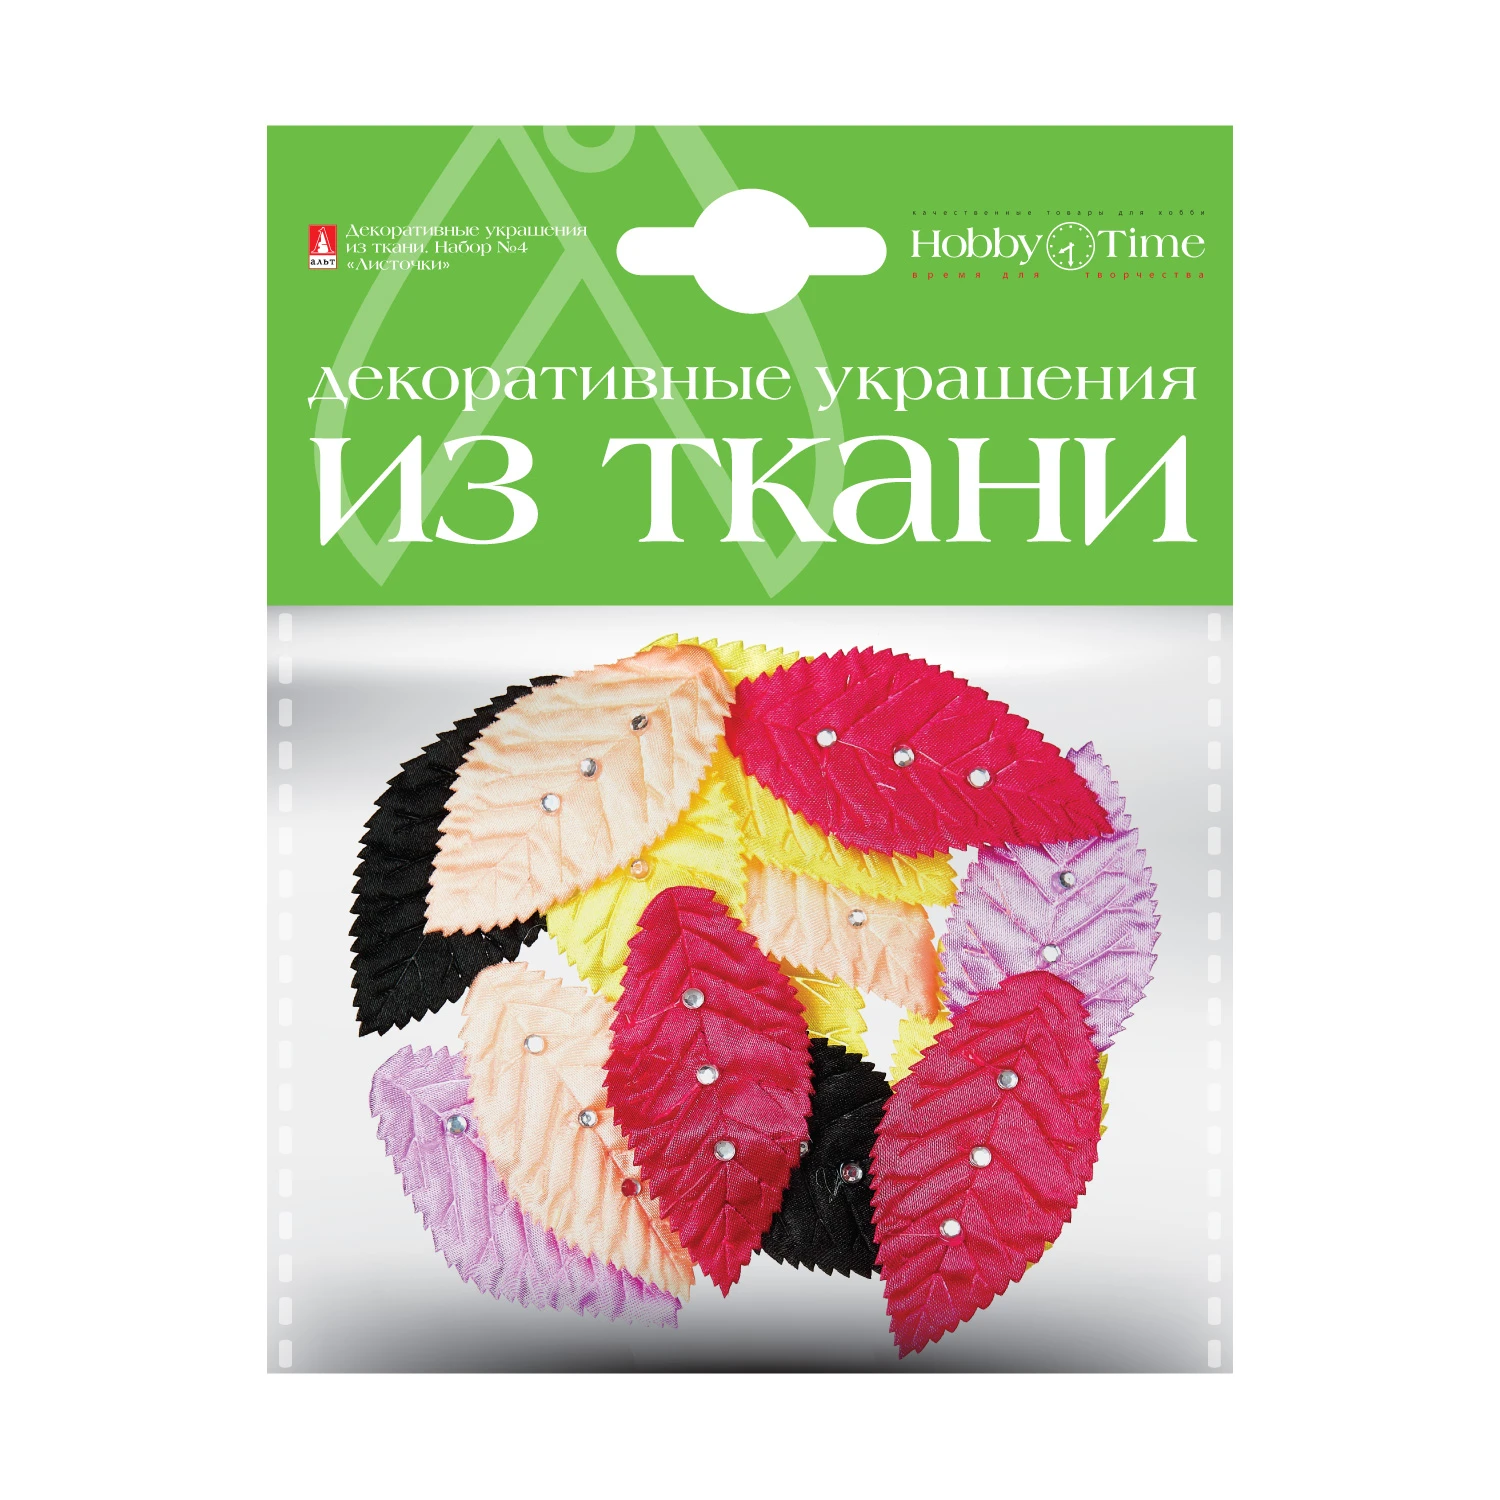 Ткани для украшения свадебного зала купить оптом и в розницу в Санкт-Петербурге